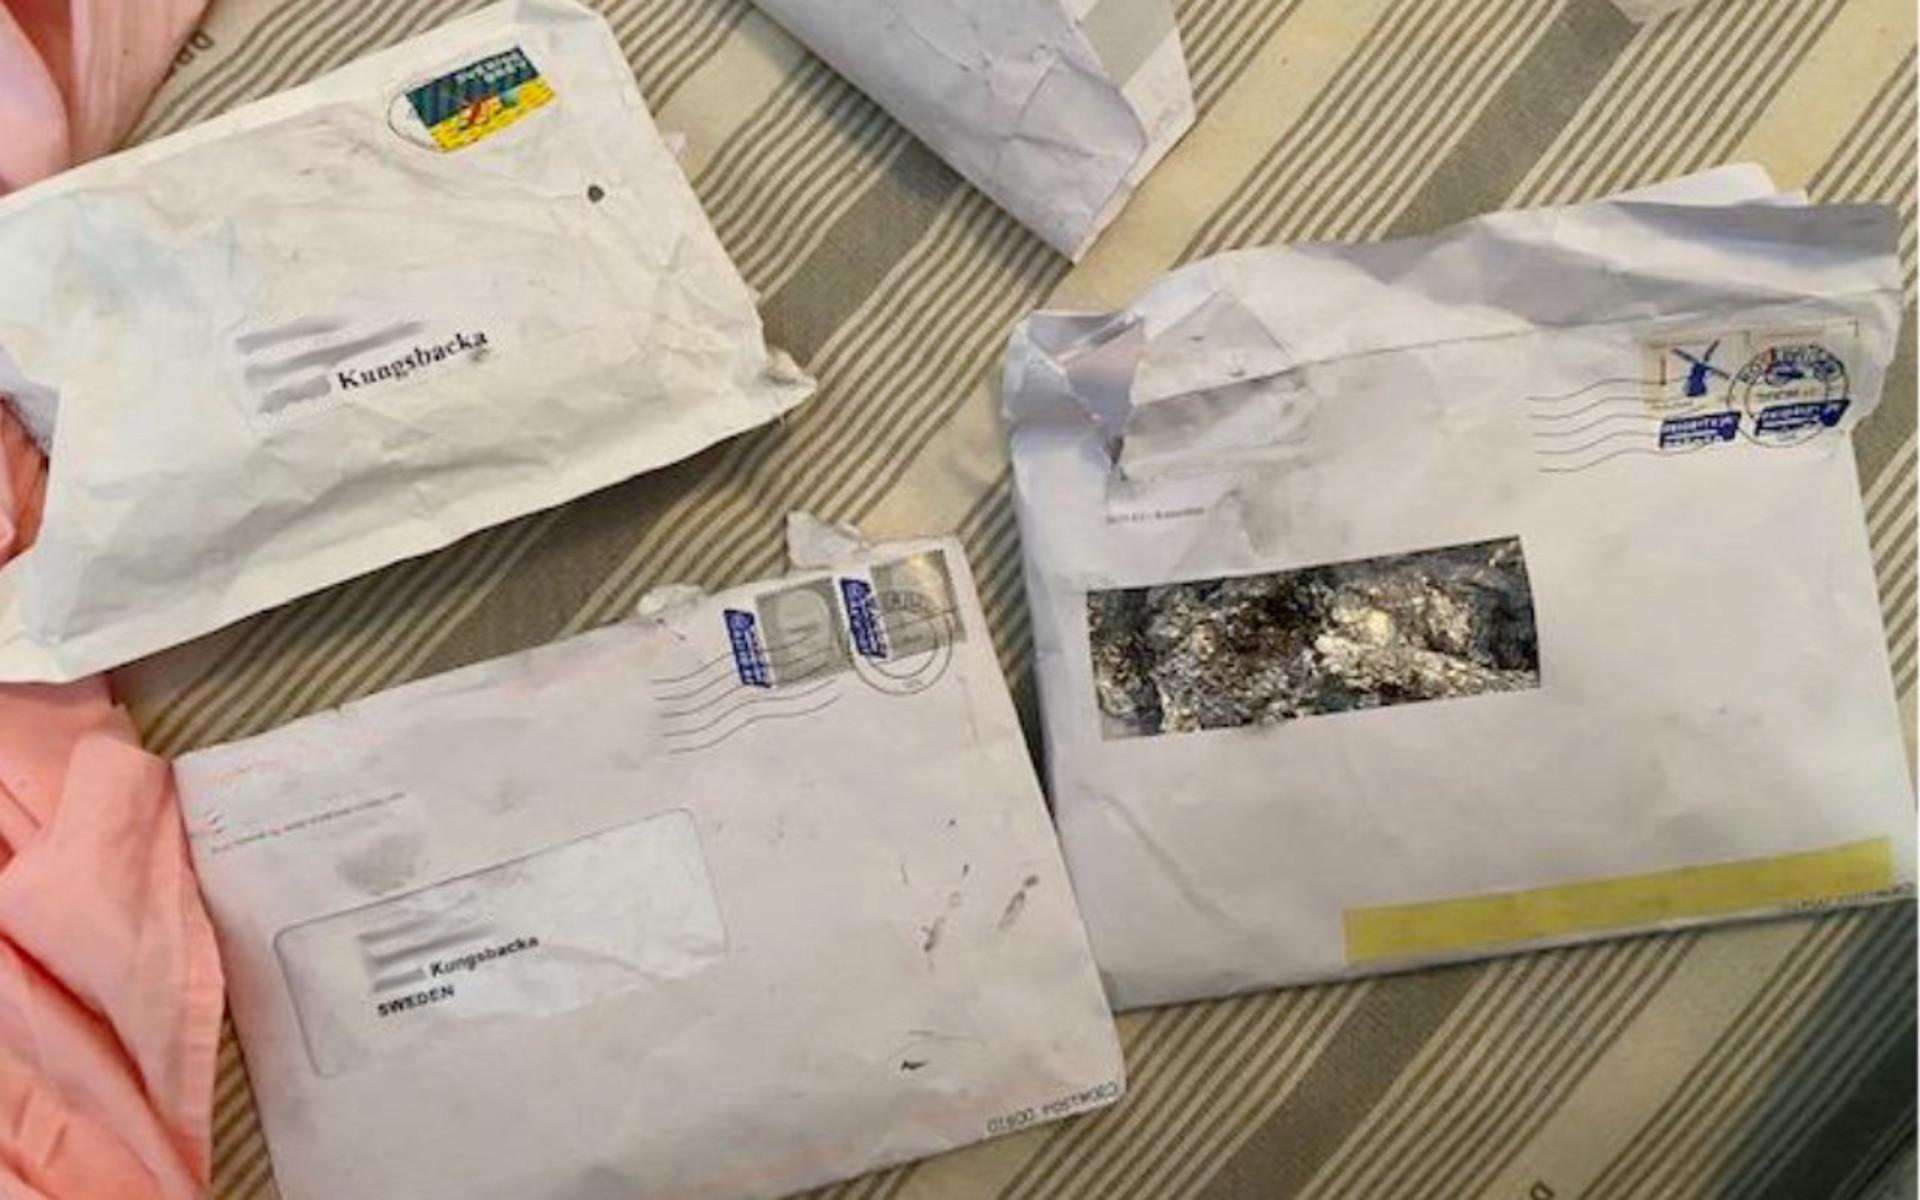 Vid husrannsakan hittades liknande, men tomma, brev som Tullverket beslagtog på Arlanda flygplats.